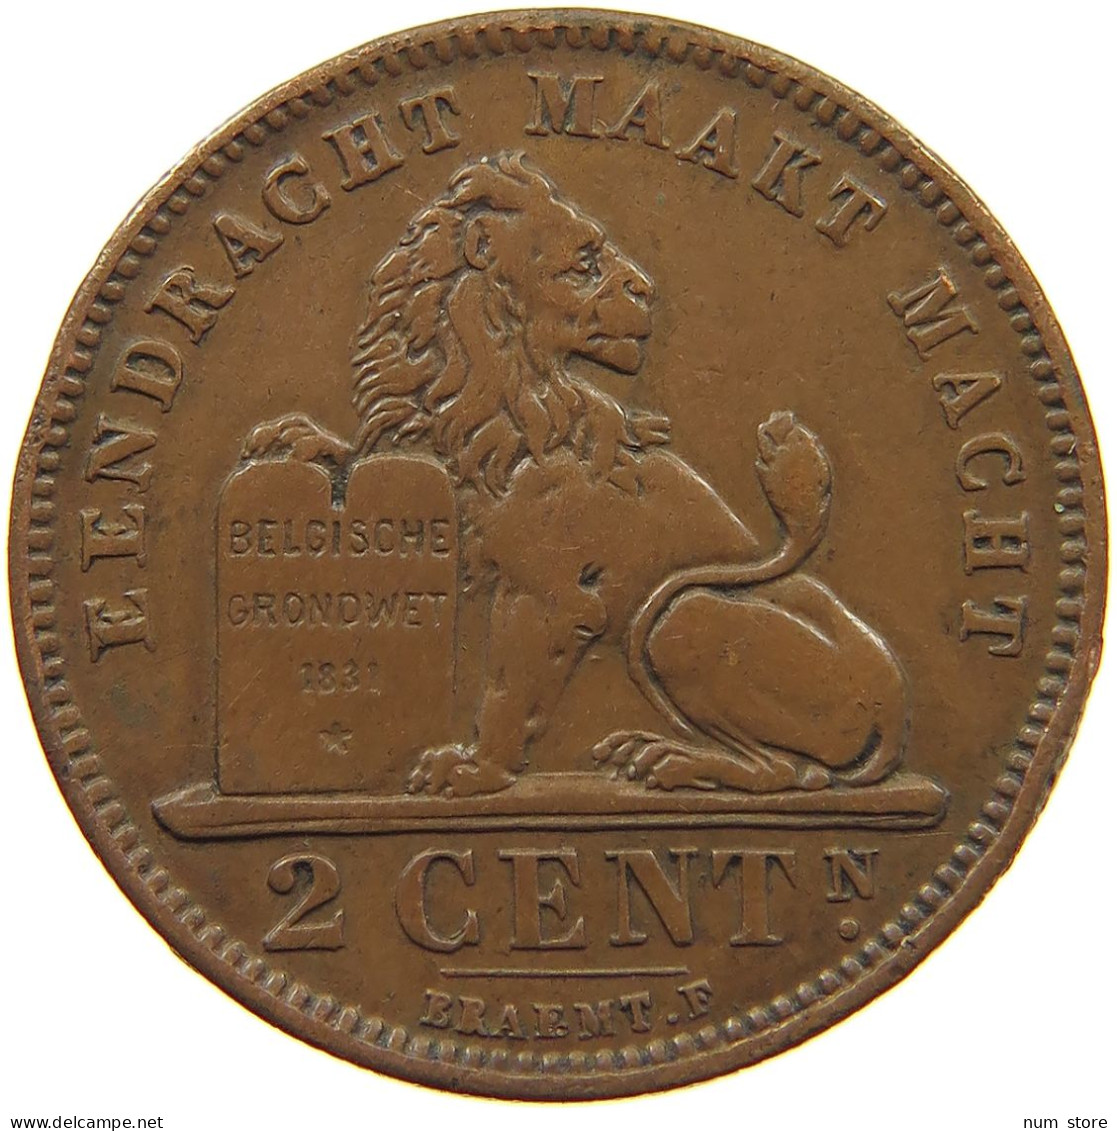 BELGIUM 2 CENTIMES 1905 #c010 0291 - 2 Centimes